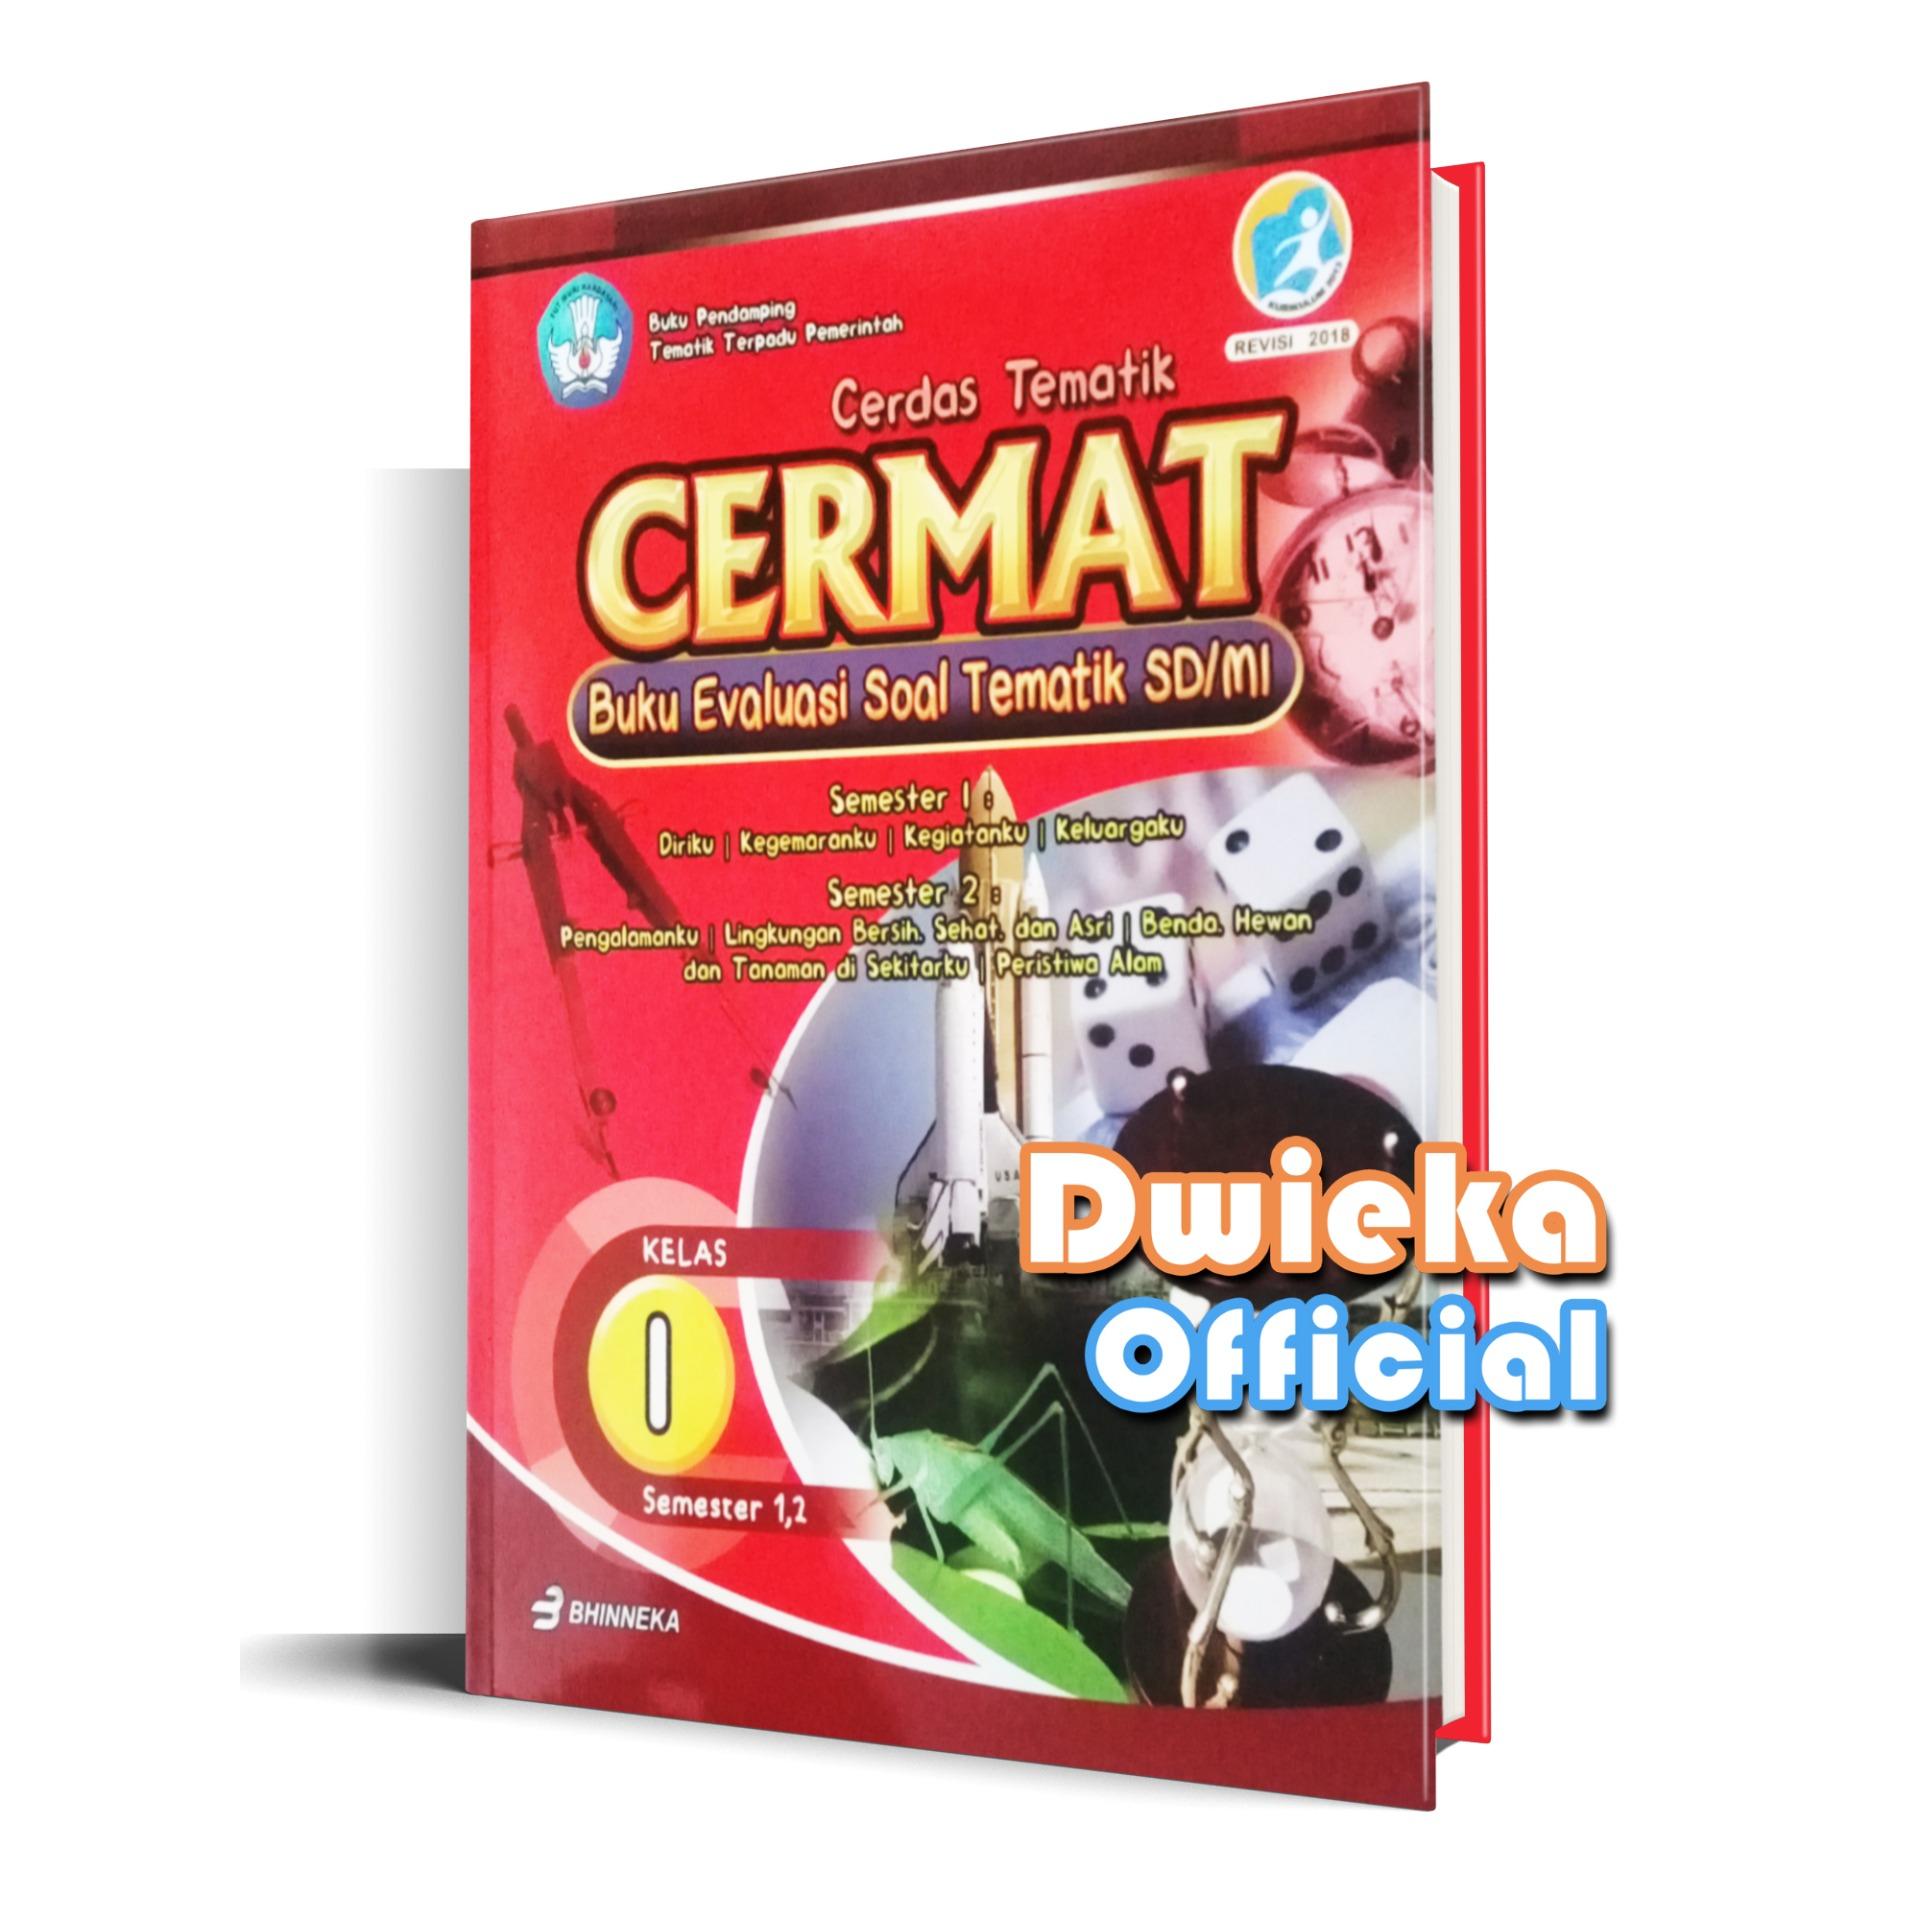 Buku Evaluasi soal Tematik Cerdas tematik "CERMAT" Kelas 1 Kurikulum 2013 Edisi Revisi 2018